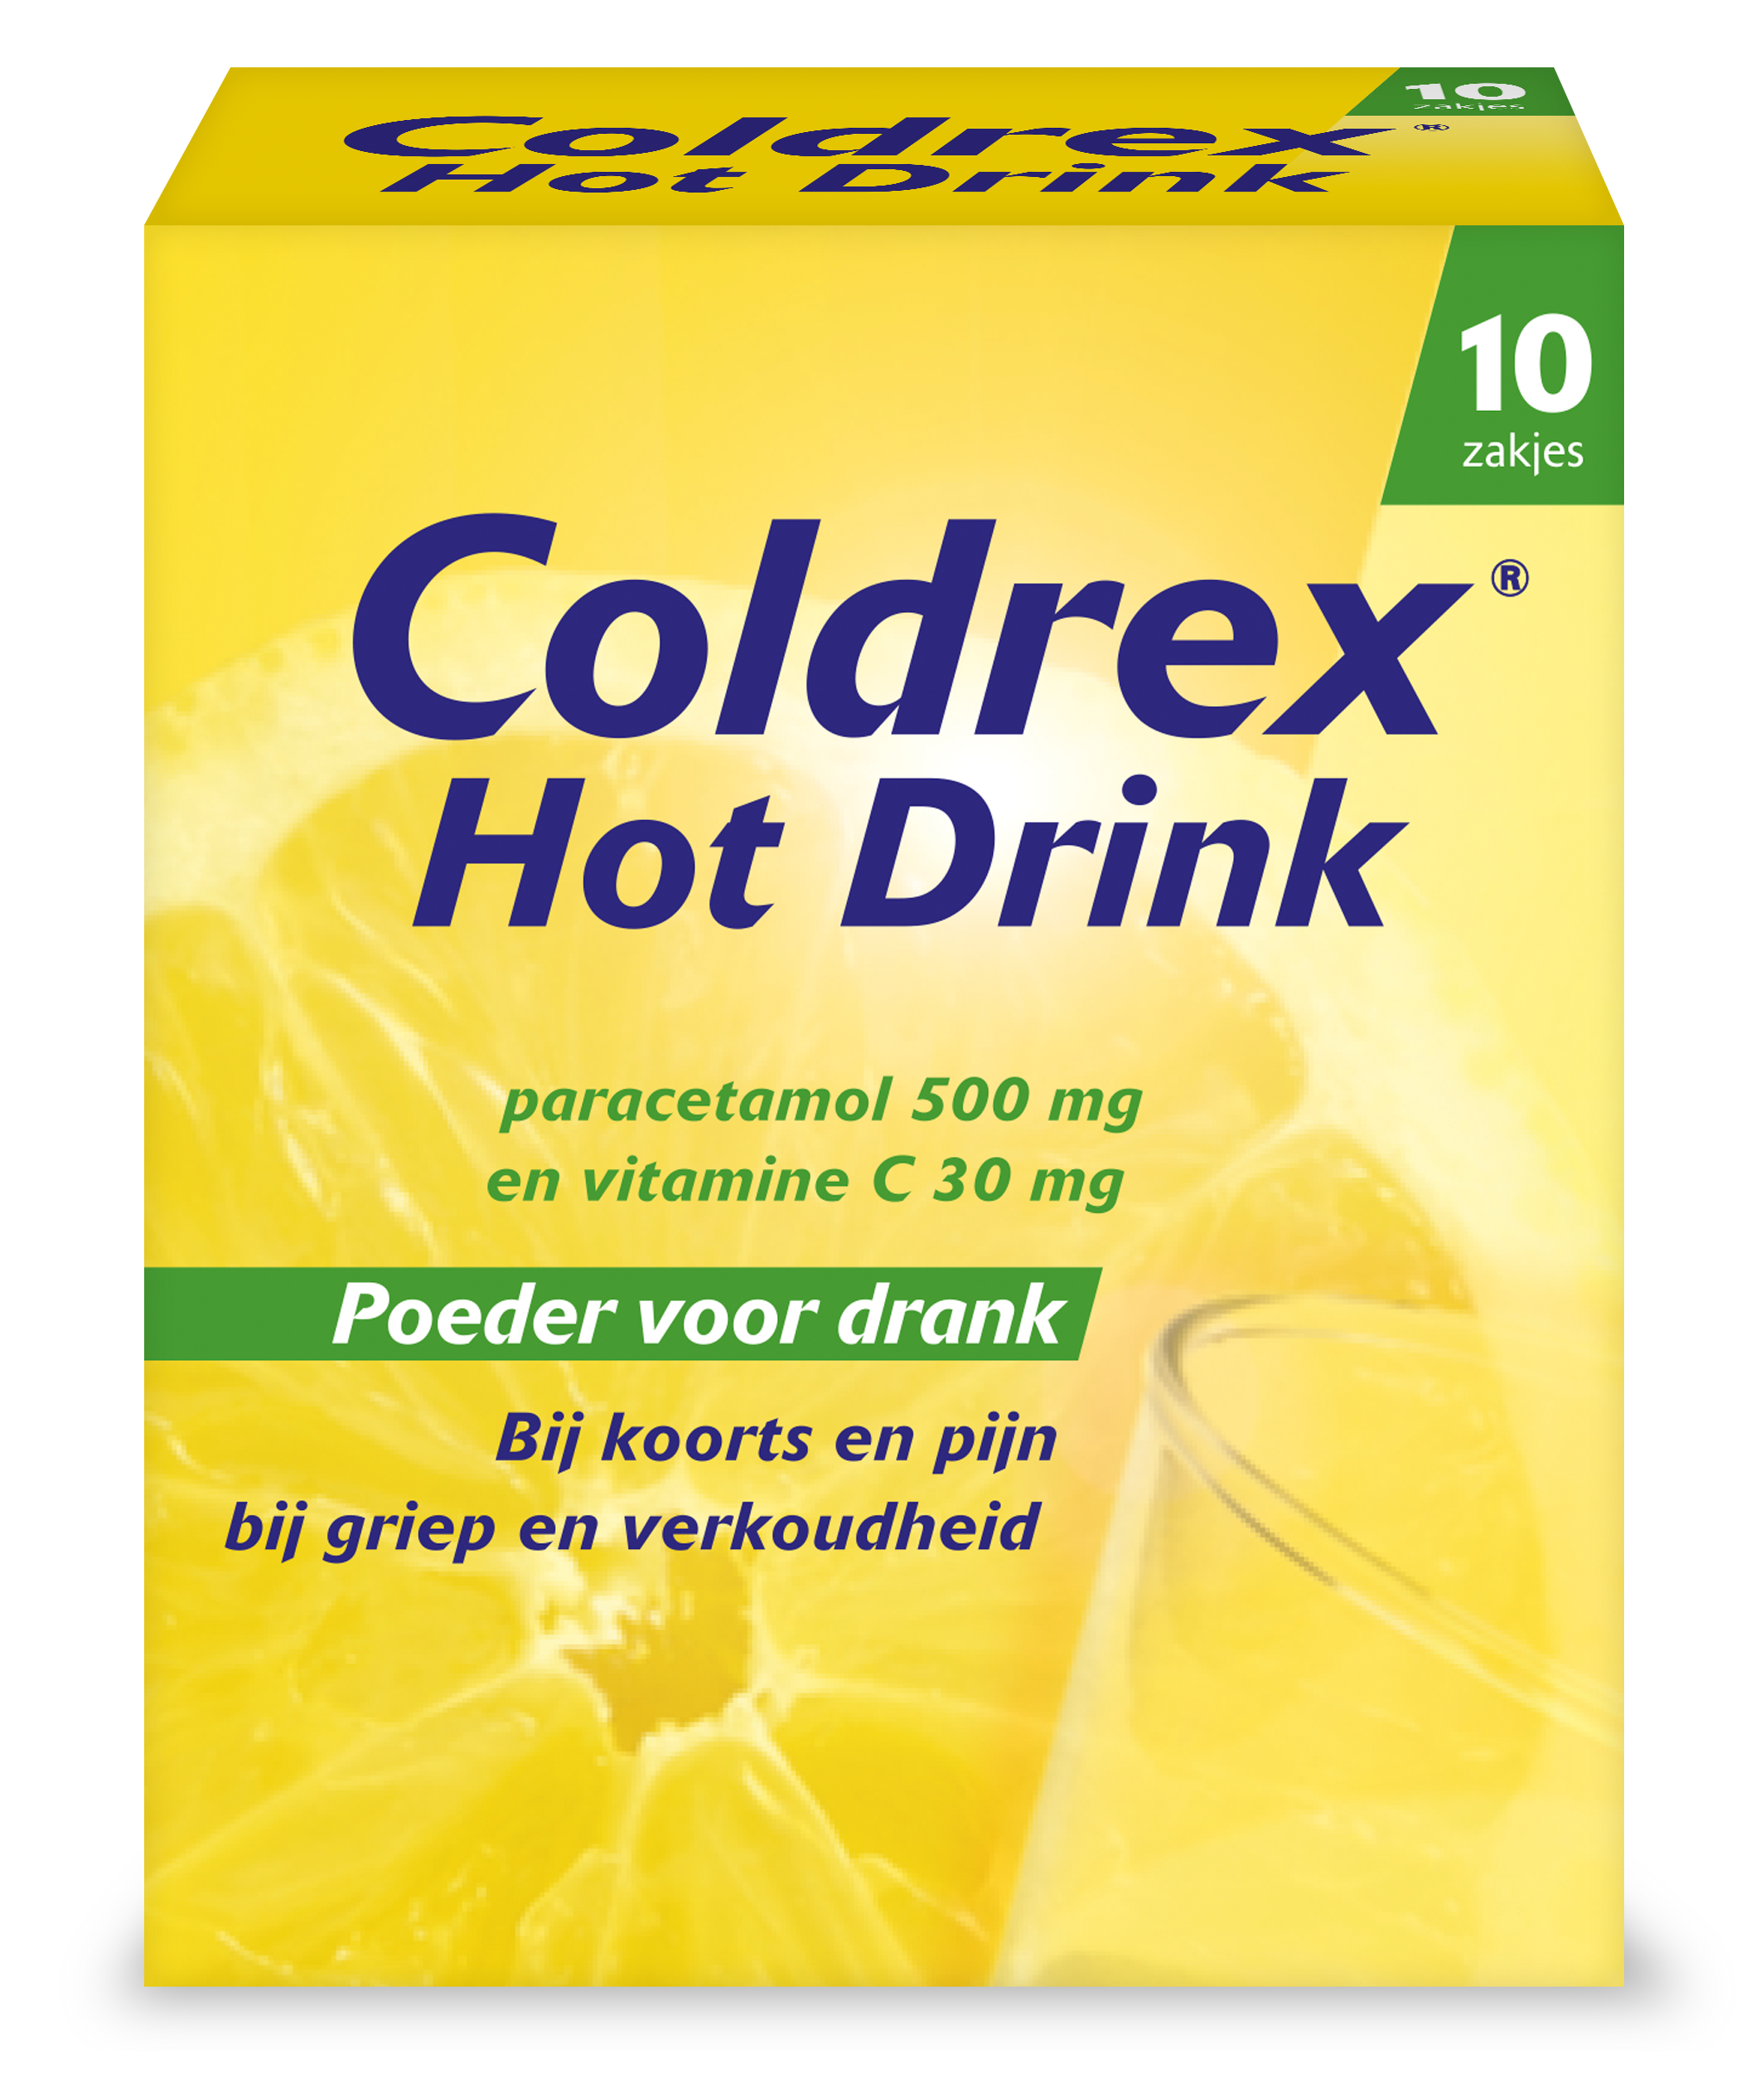 Coldrex Hot Drink